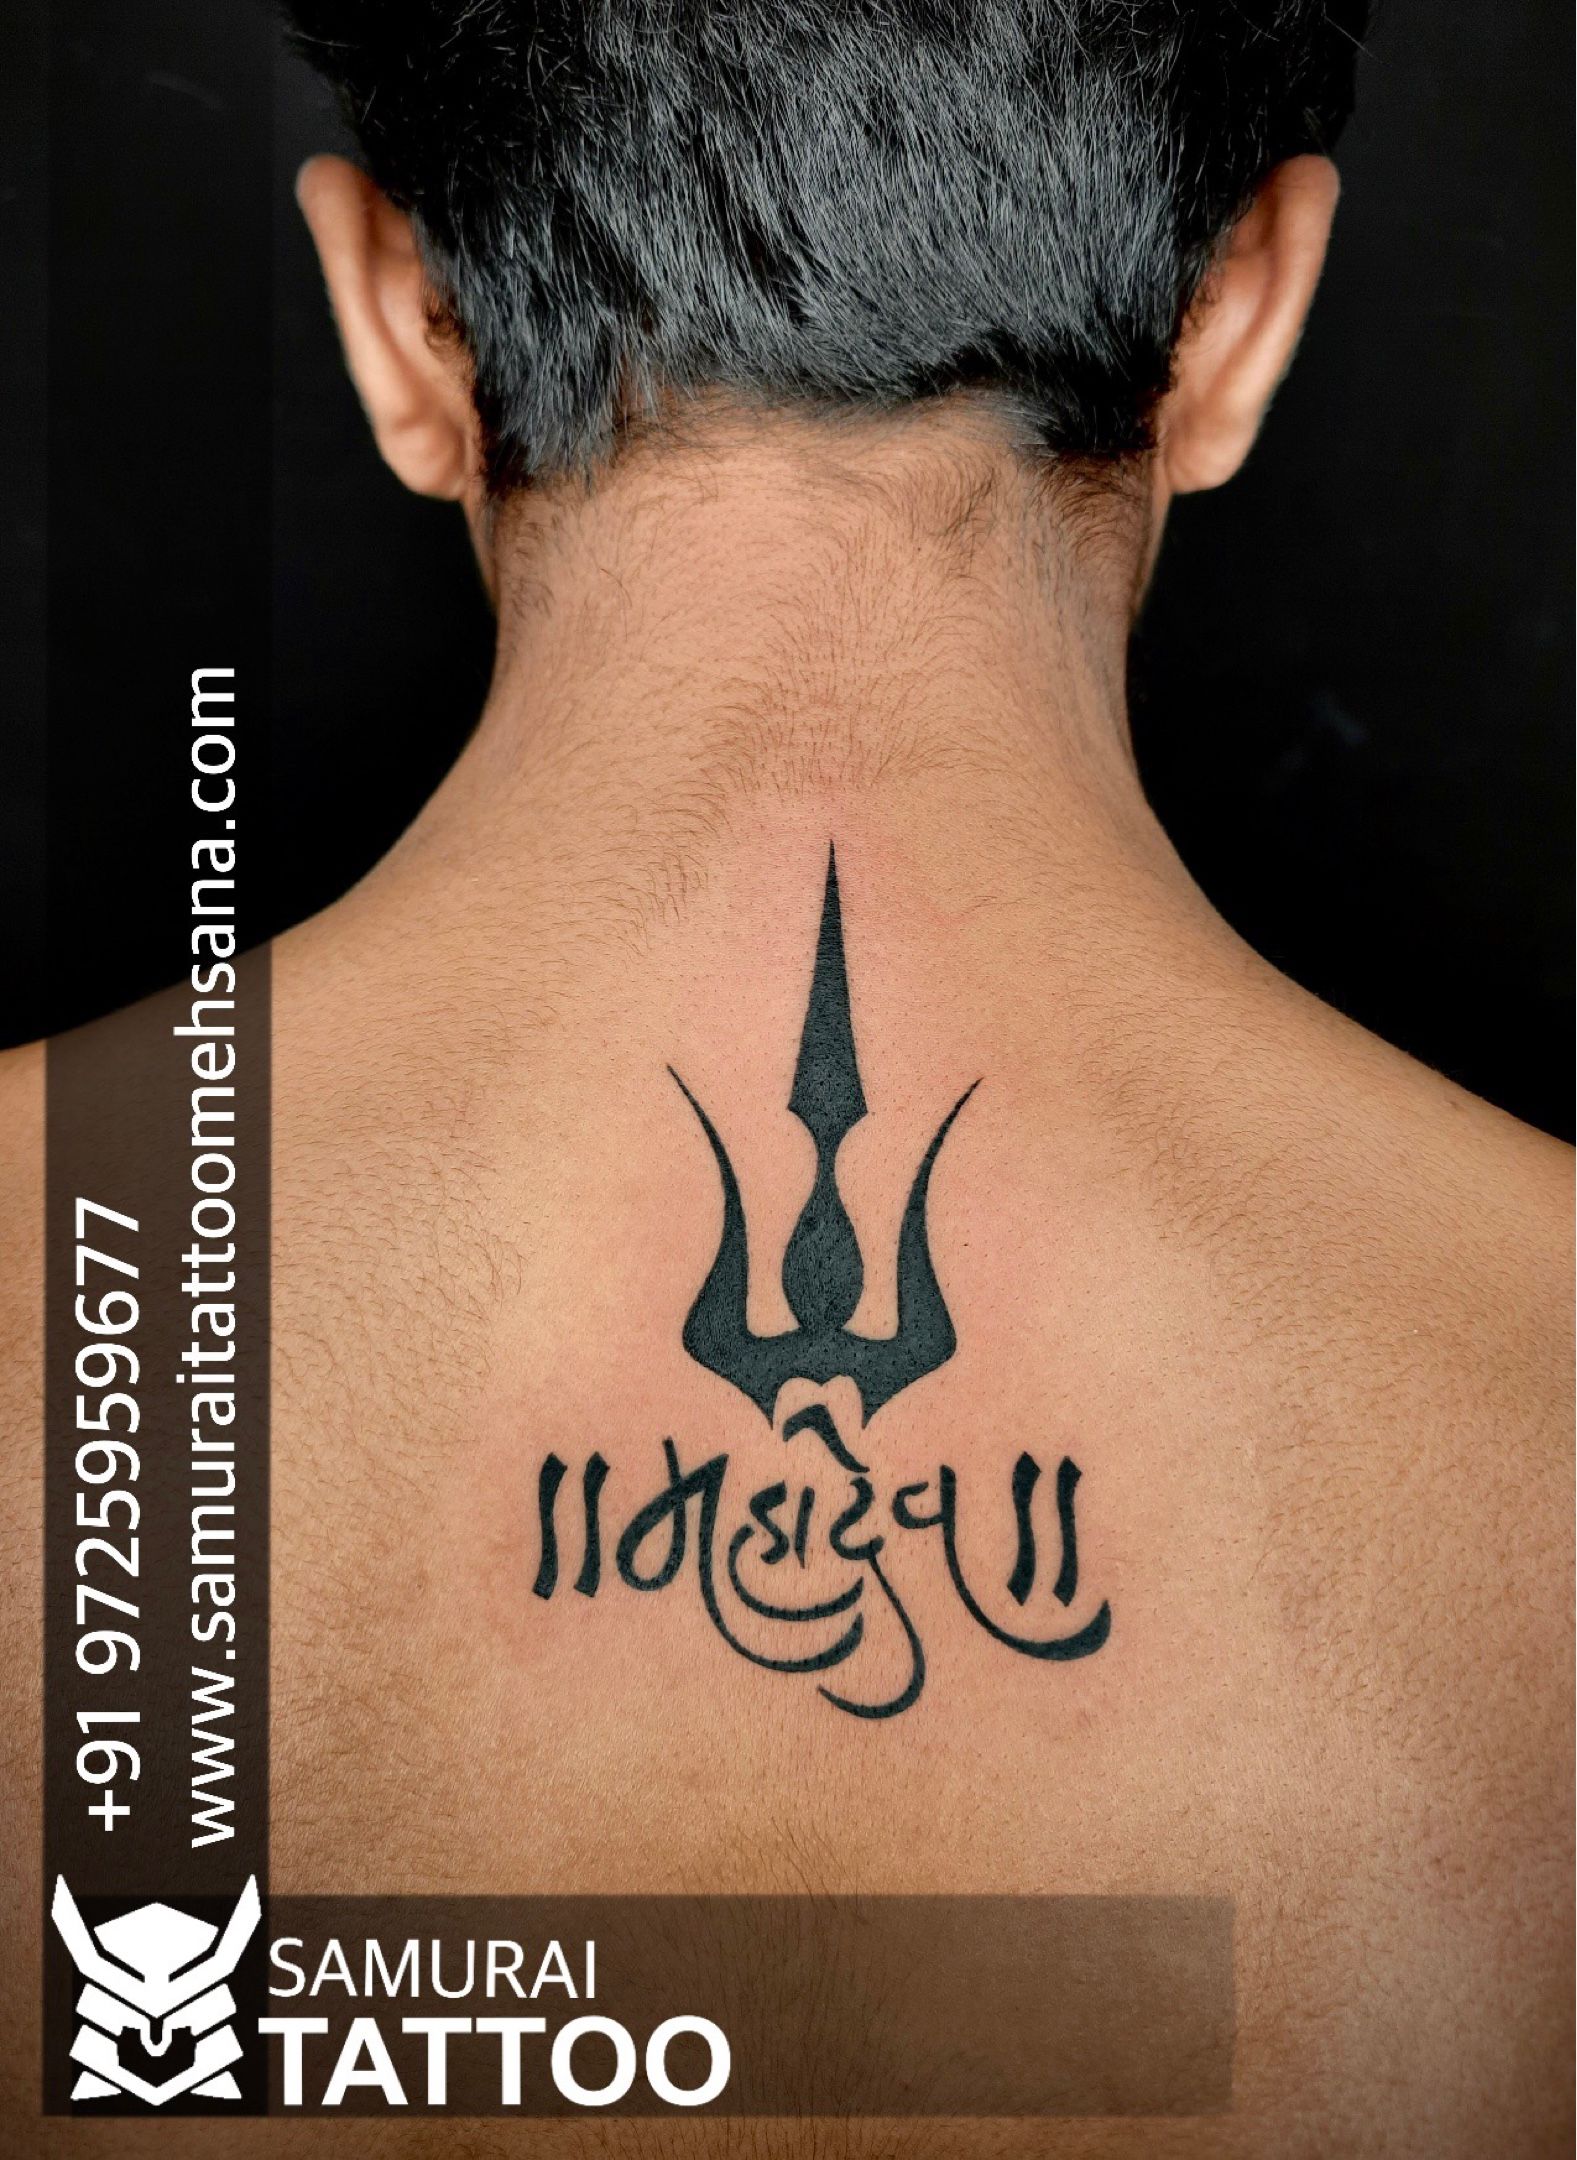 lord Shiva tattoo designs ideas  Shiva tattoo designs ideas 4K HD video   Mahadev tattoo ideas   YouTube